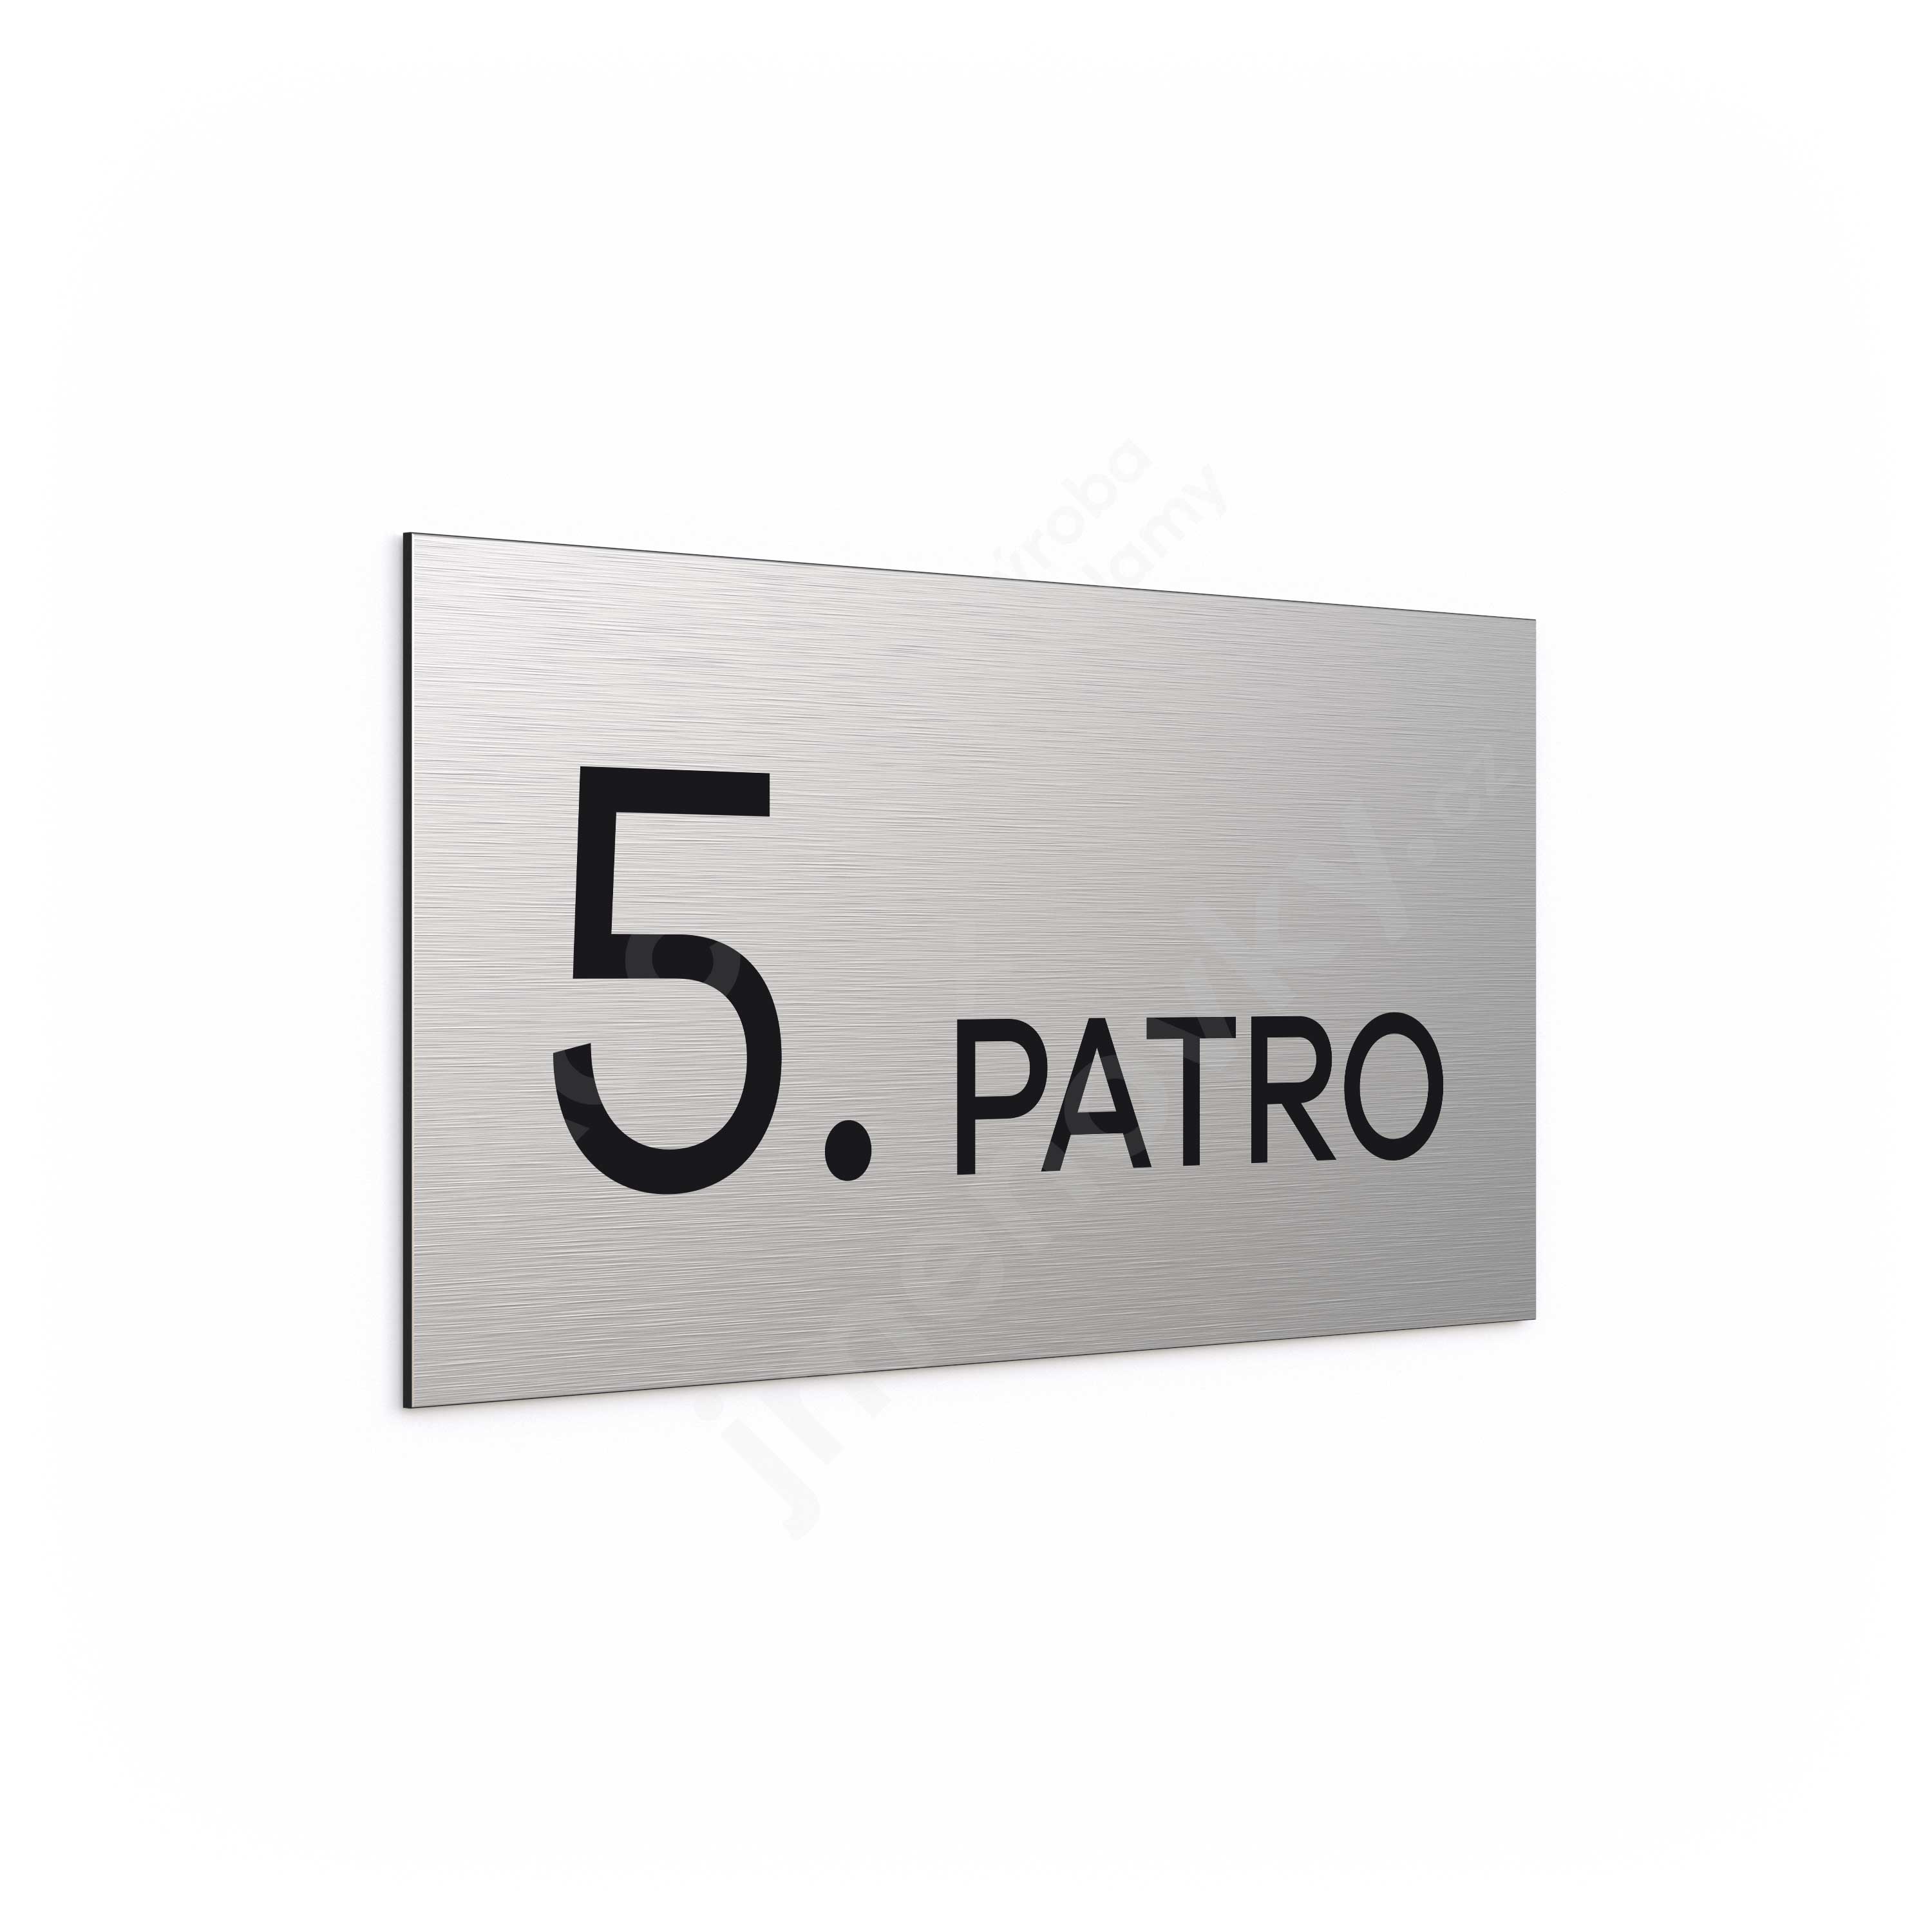 Označení podlaží "5. PATRO" - stříbrná tabulka - černý popis